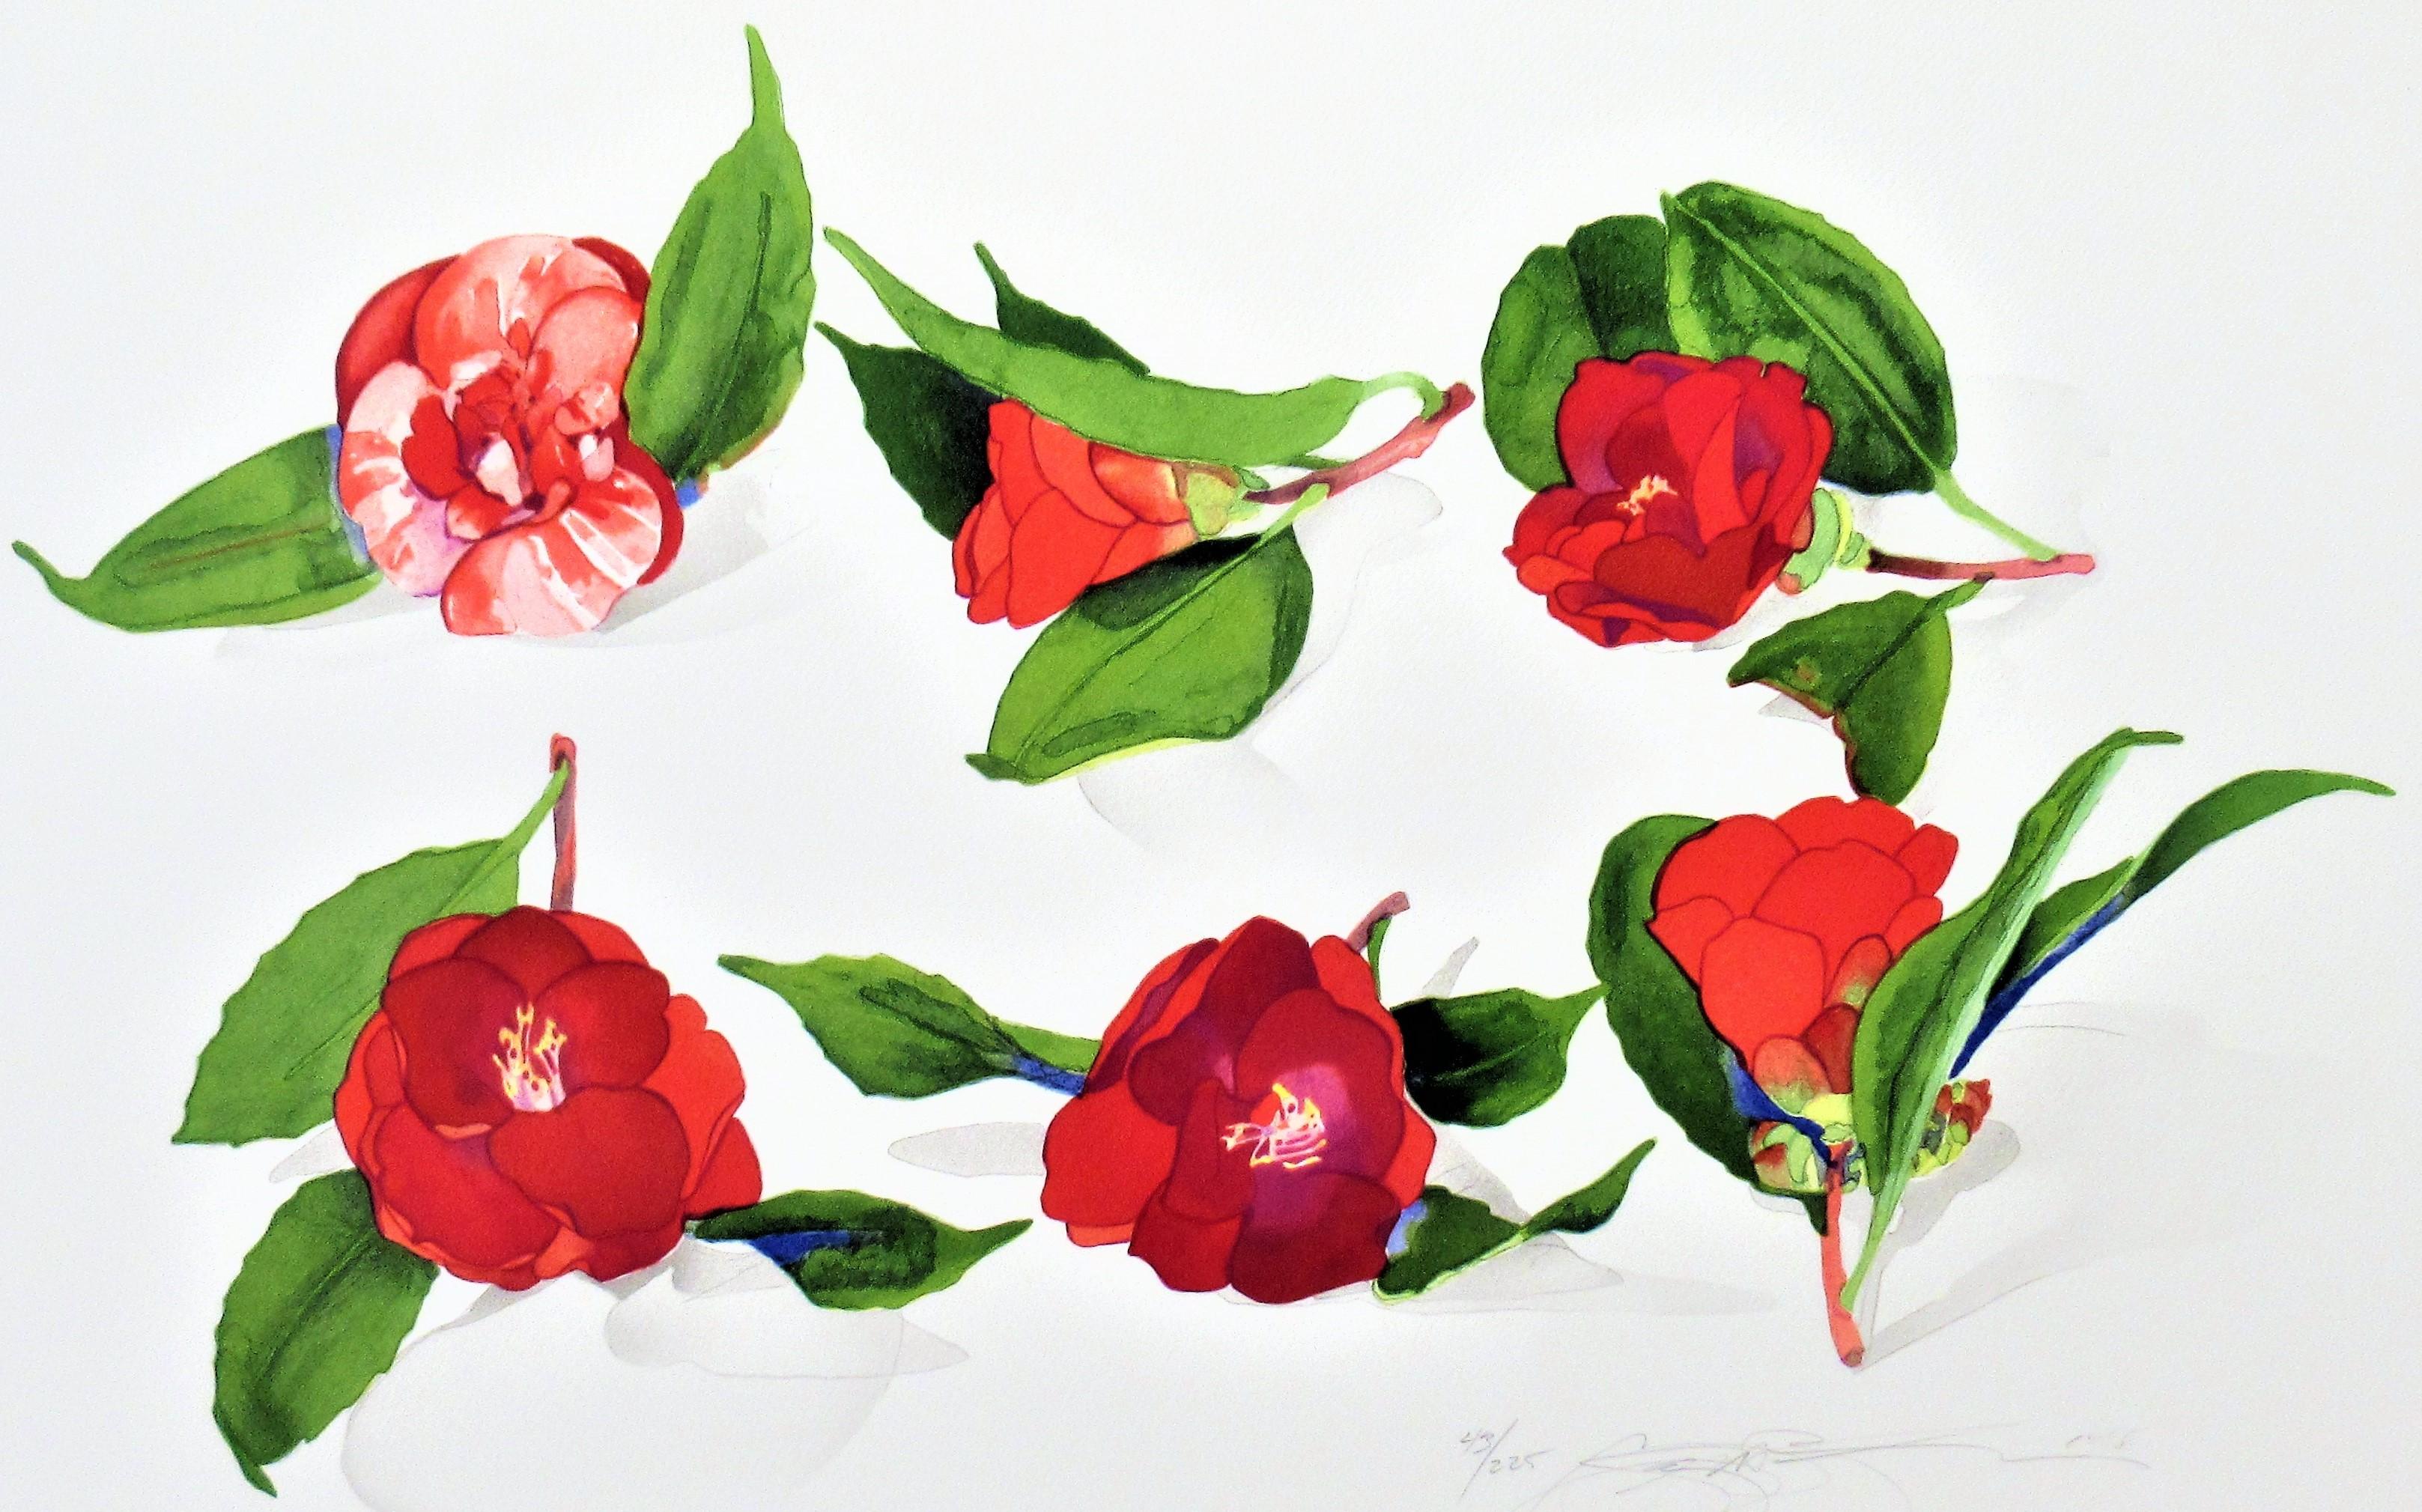 6 Camellias d'après un artiste japonais inconnu - Print de Gary Bukovnik